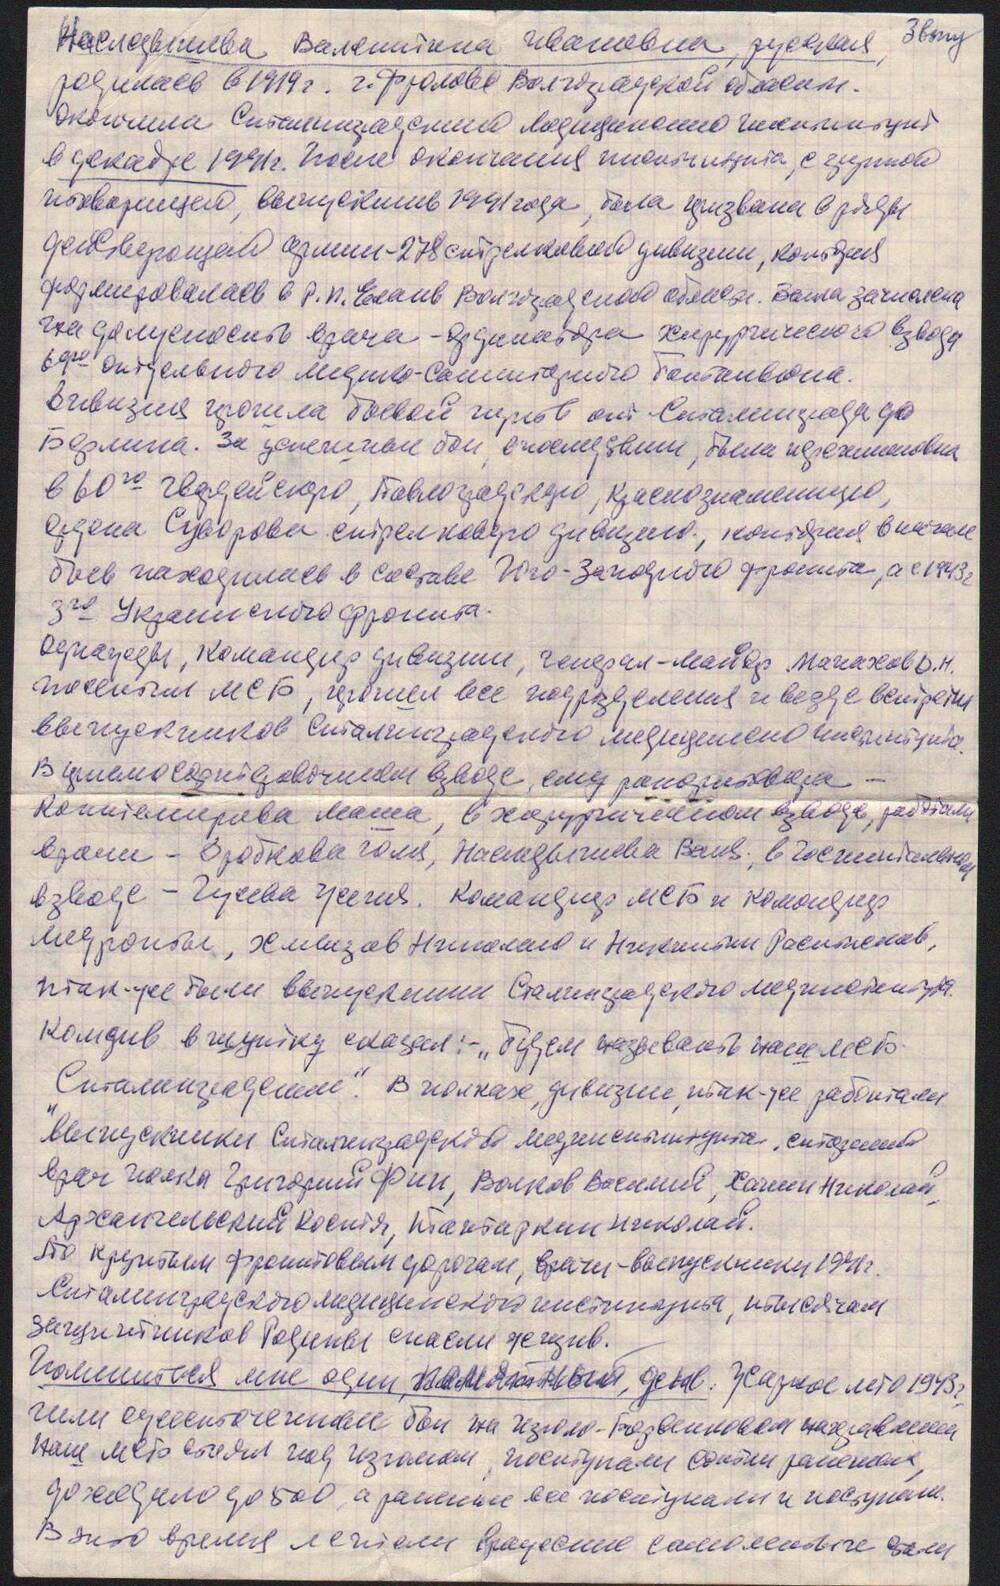 Автобиография 
В.И. Наследышевой. 14 декабря 1981